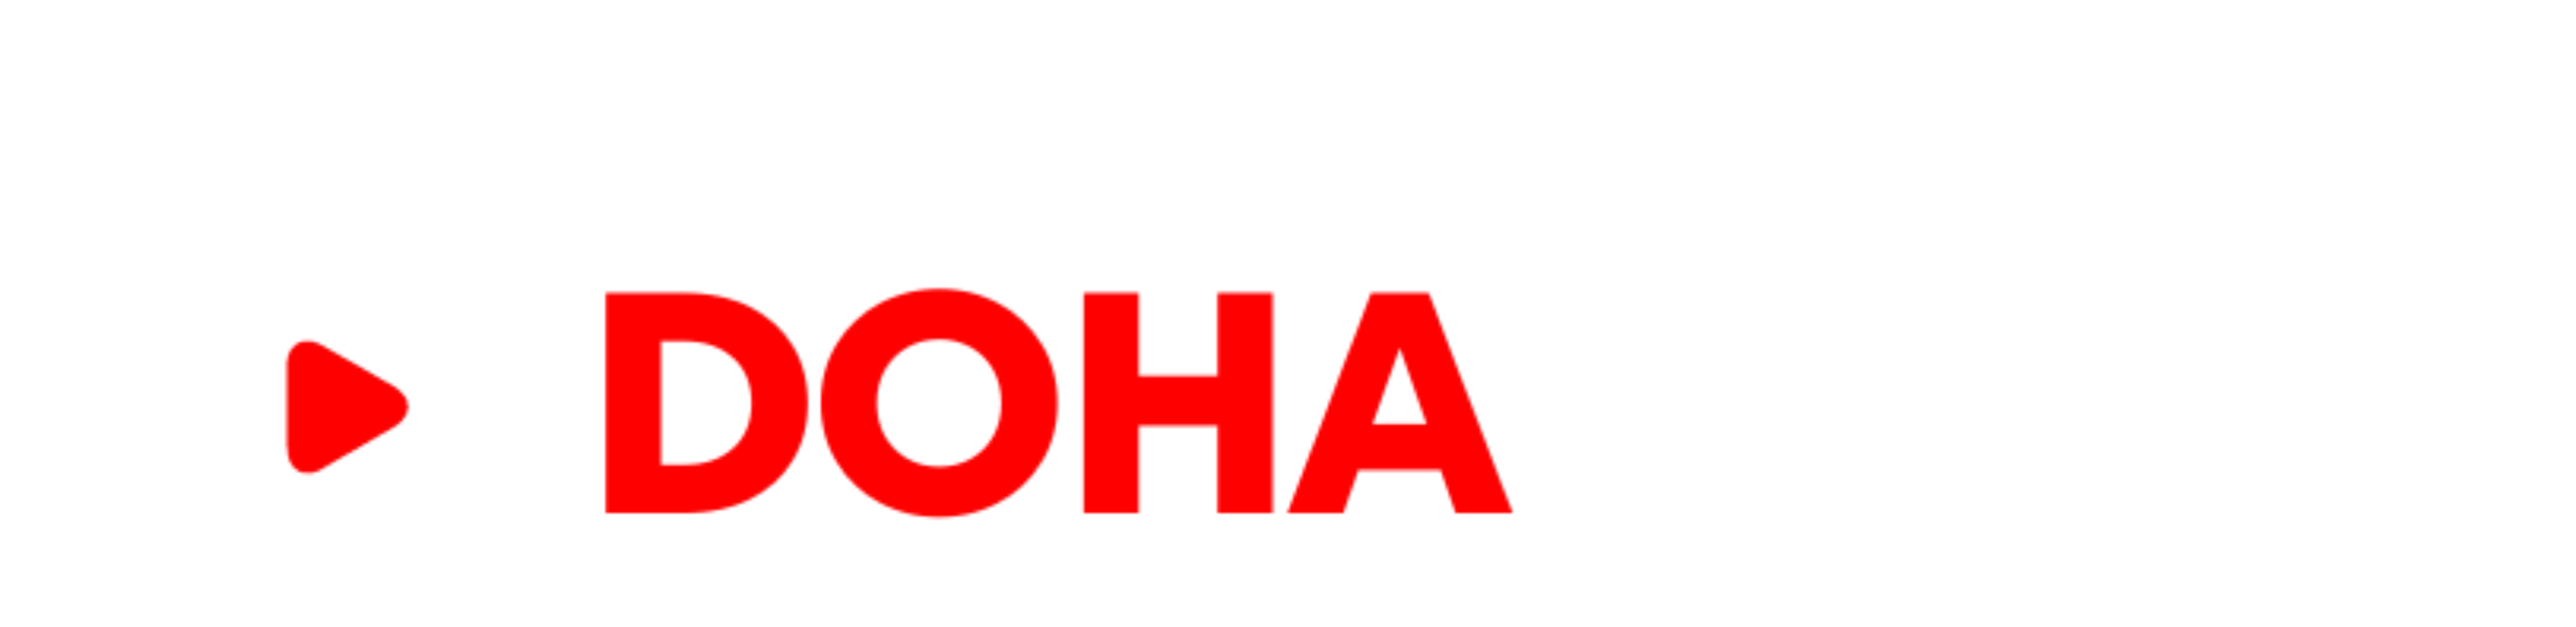 Dohabd.com